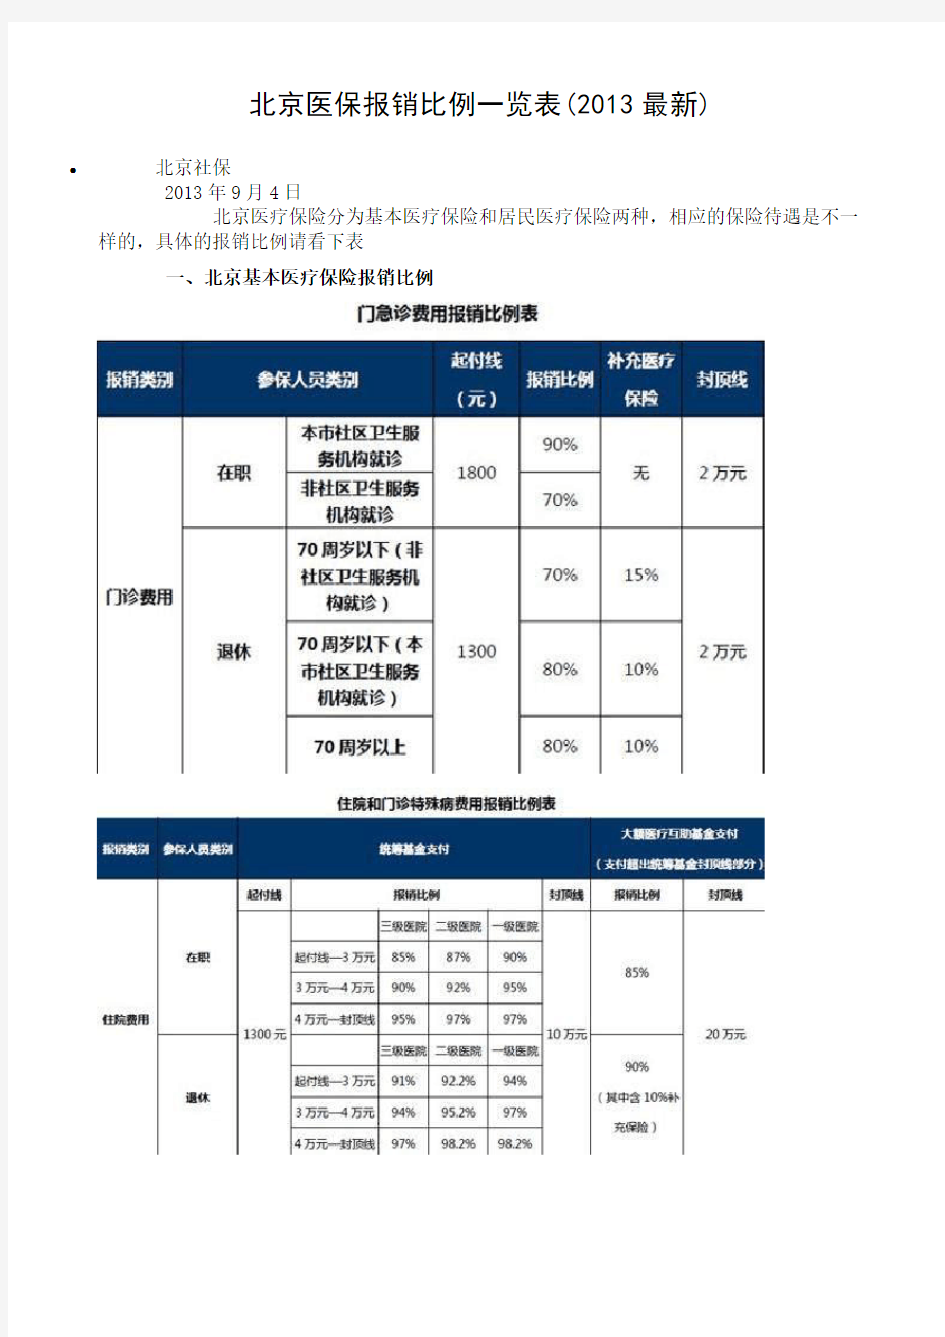 1、北京医保报销比例一览表(2013最新)